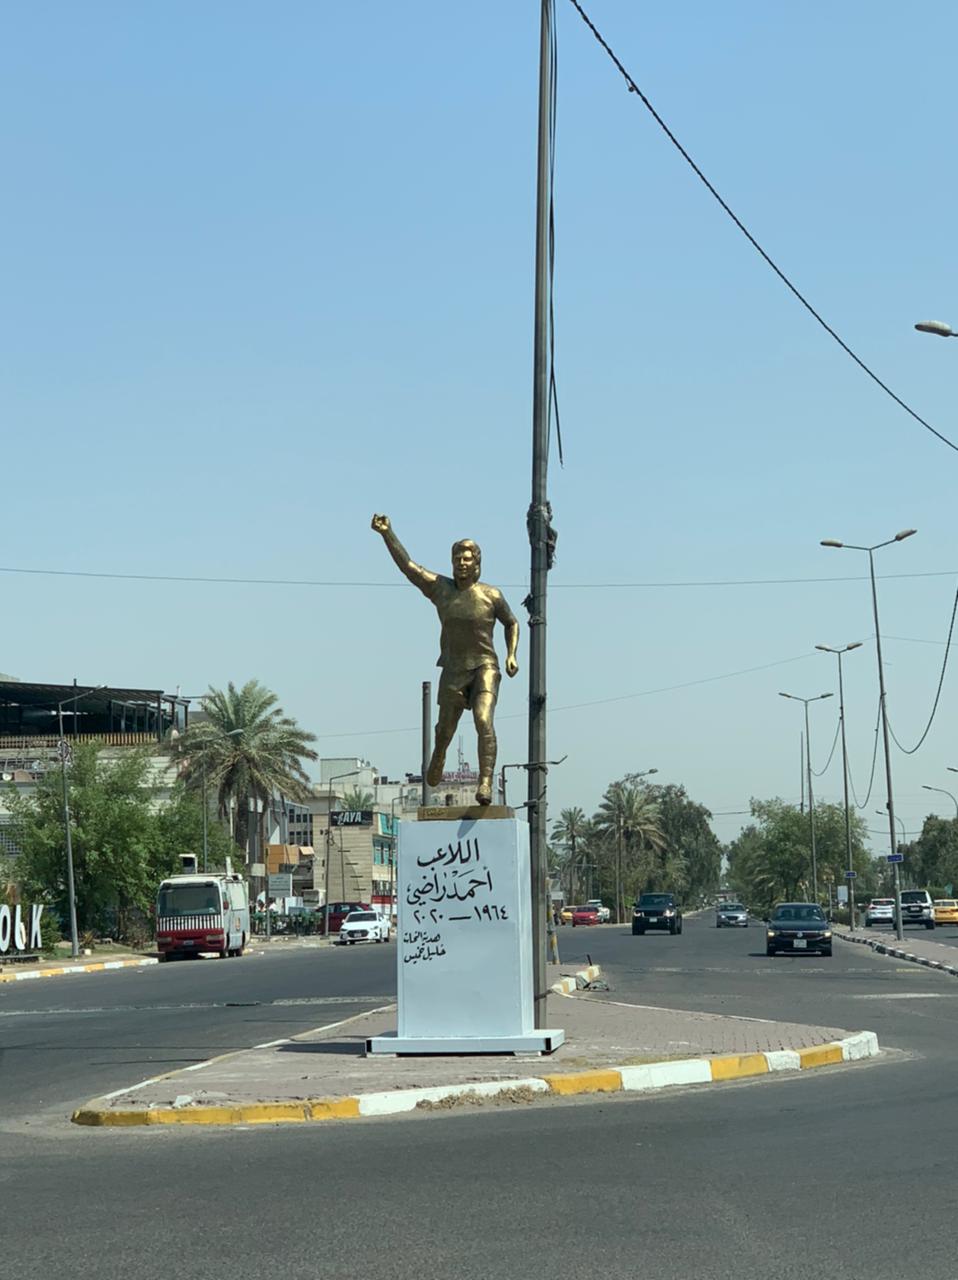 بيان صحفي  امانة بغداد تدعو الى تكريم رموزنا بما يتناسب ومكانتهم والقيمة العليا للمشهد الحضري لبغداد